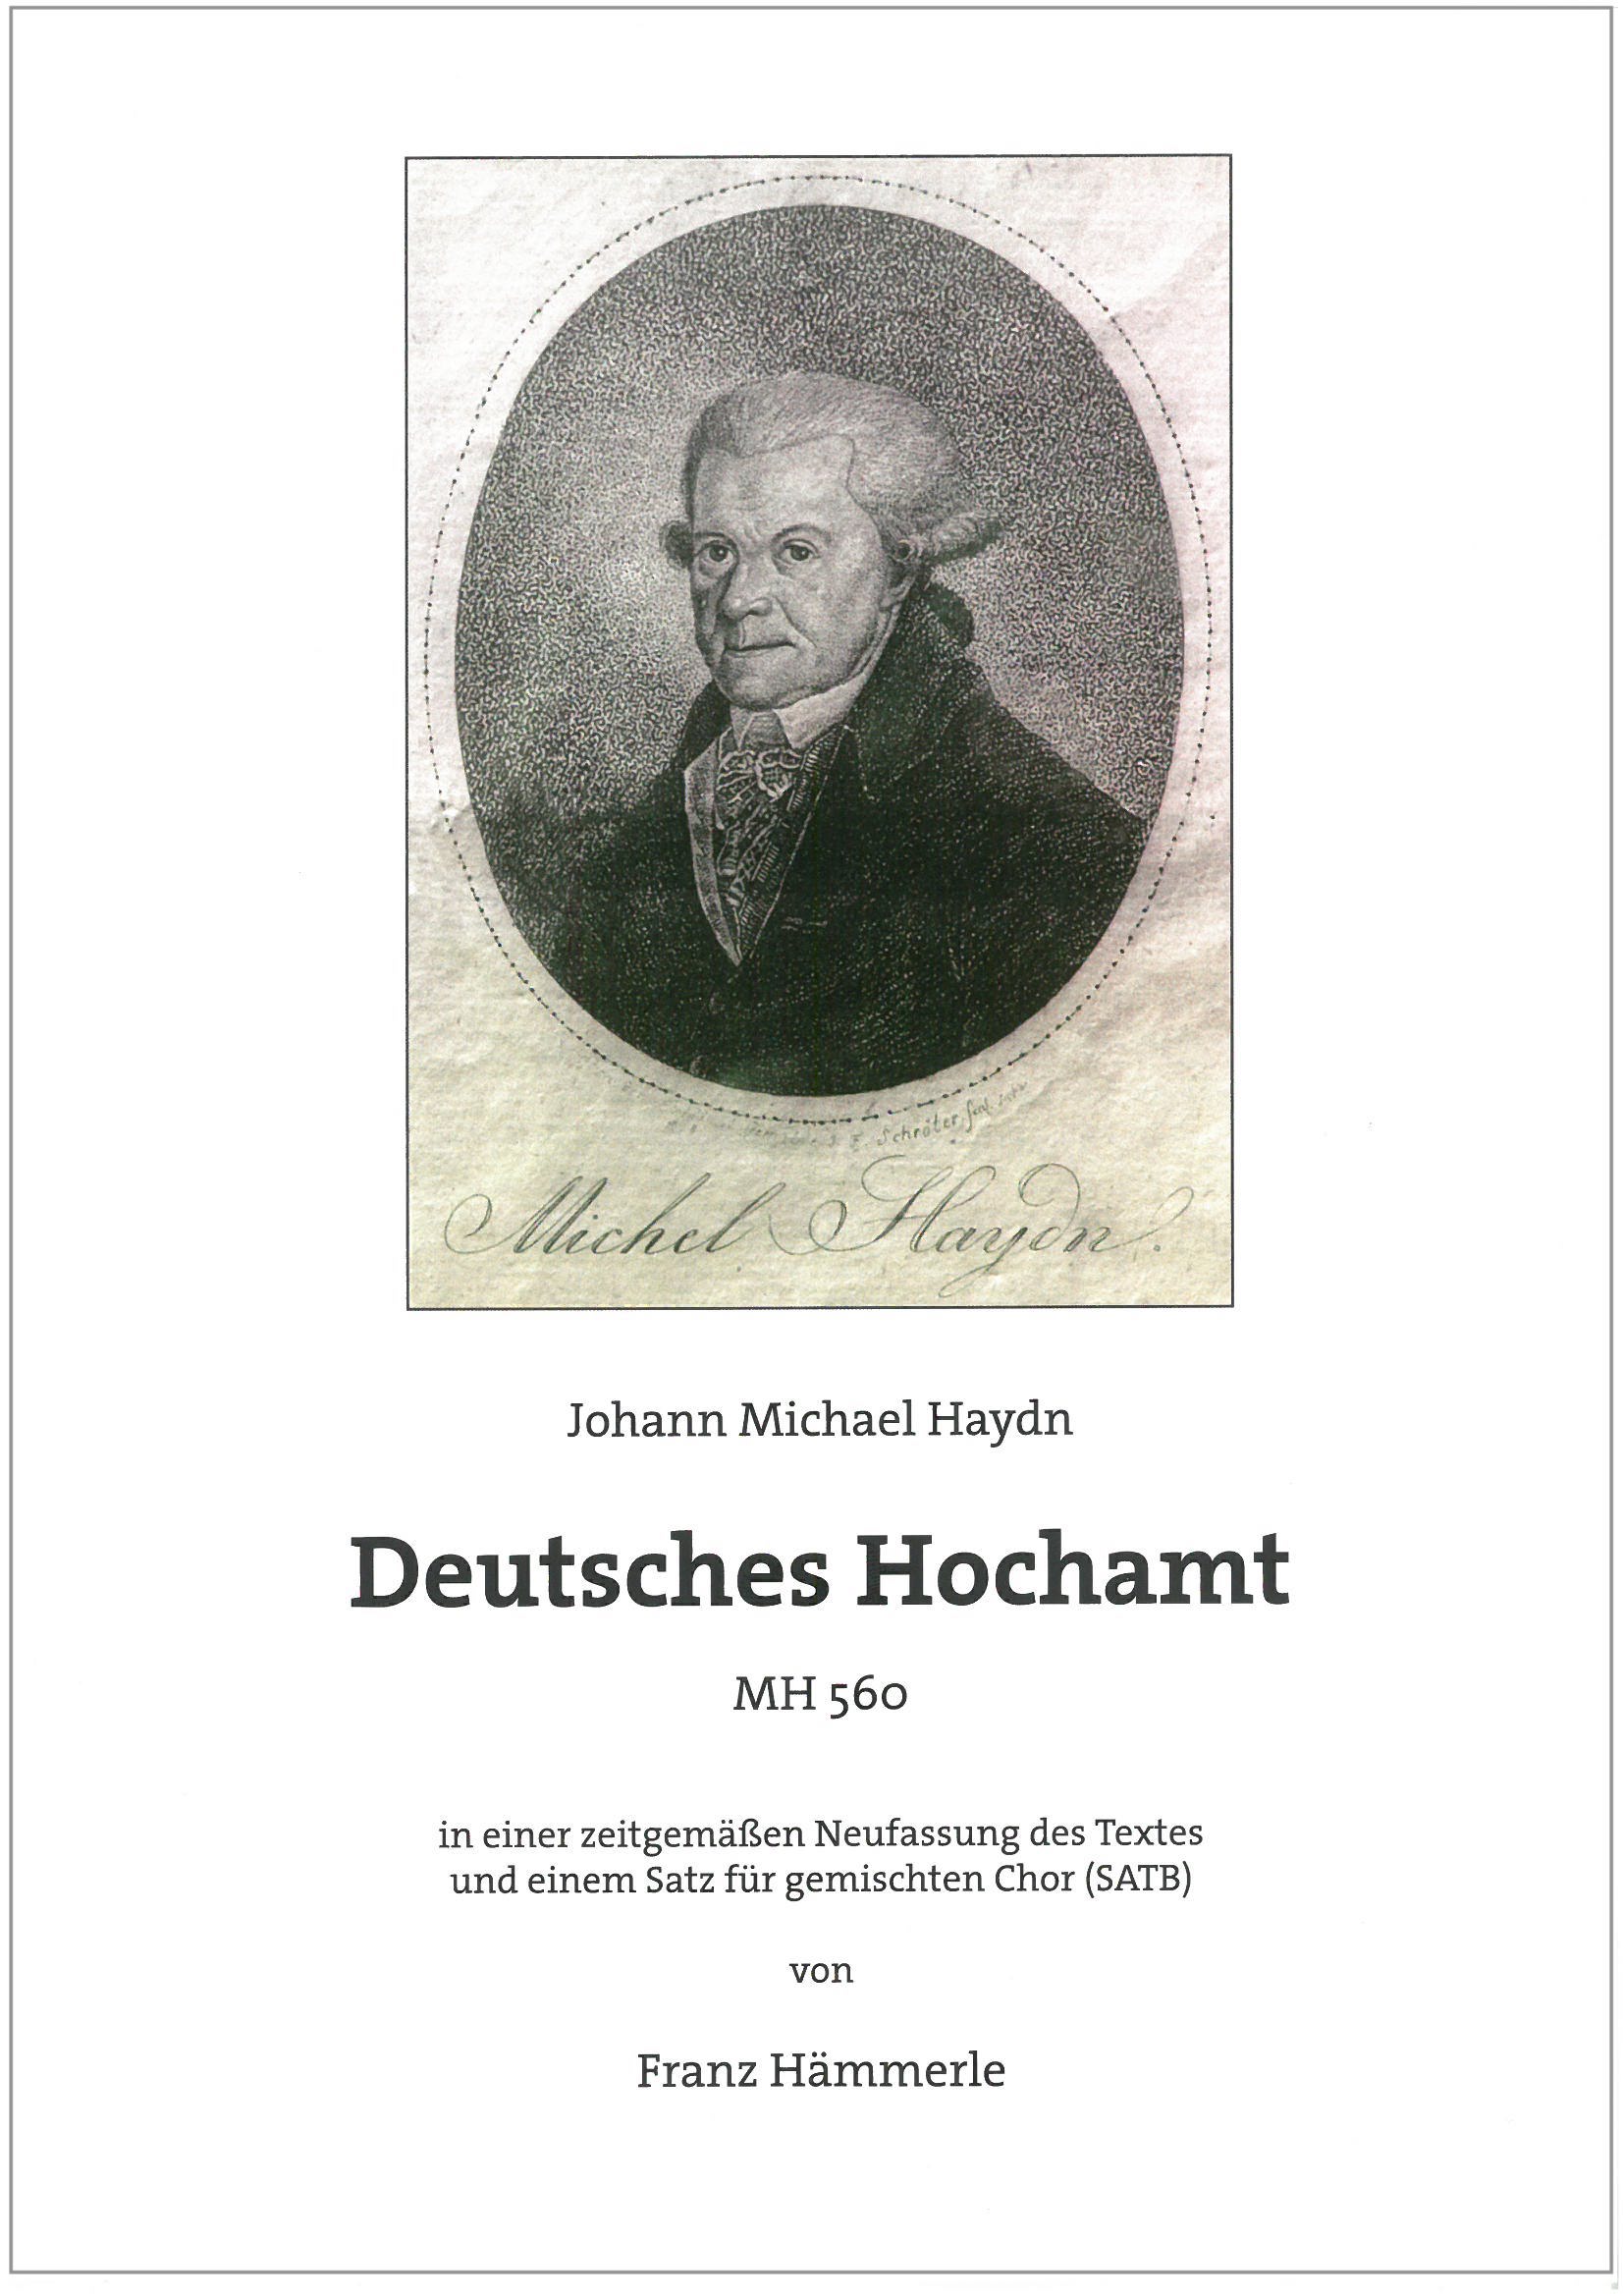 Joseph Michael Haydn: Deutsches Hochamt (MH 560)